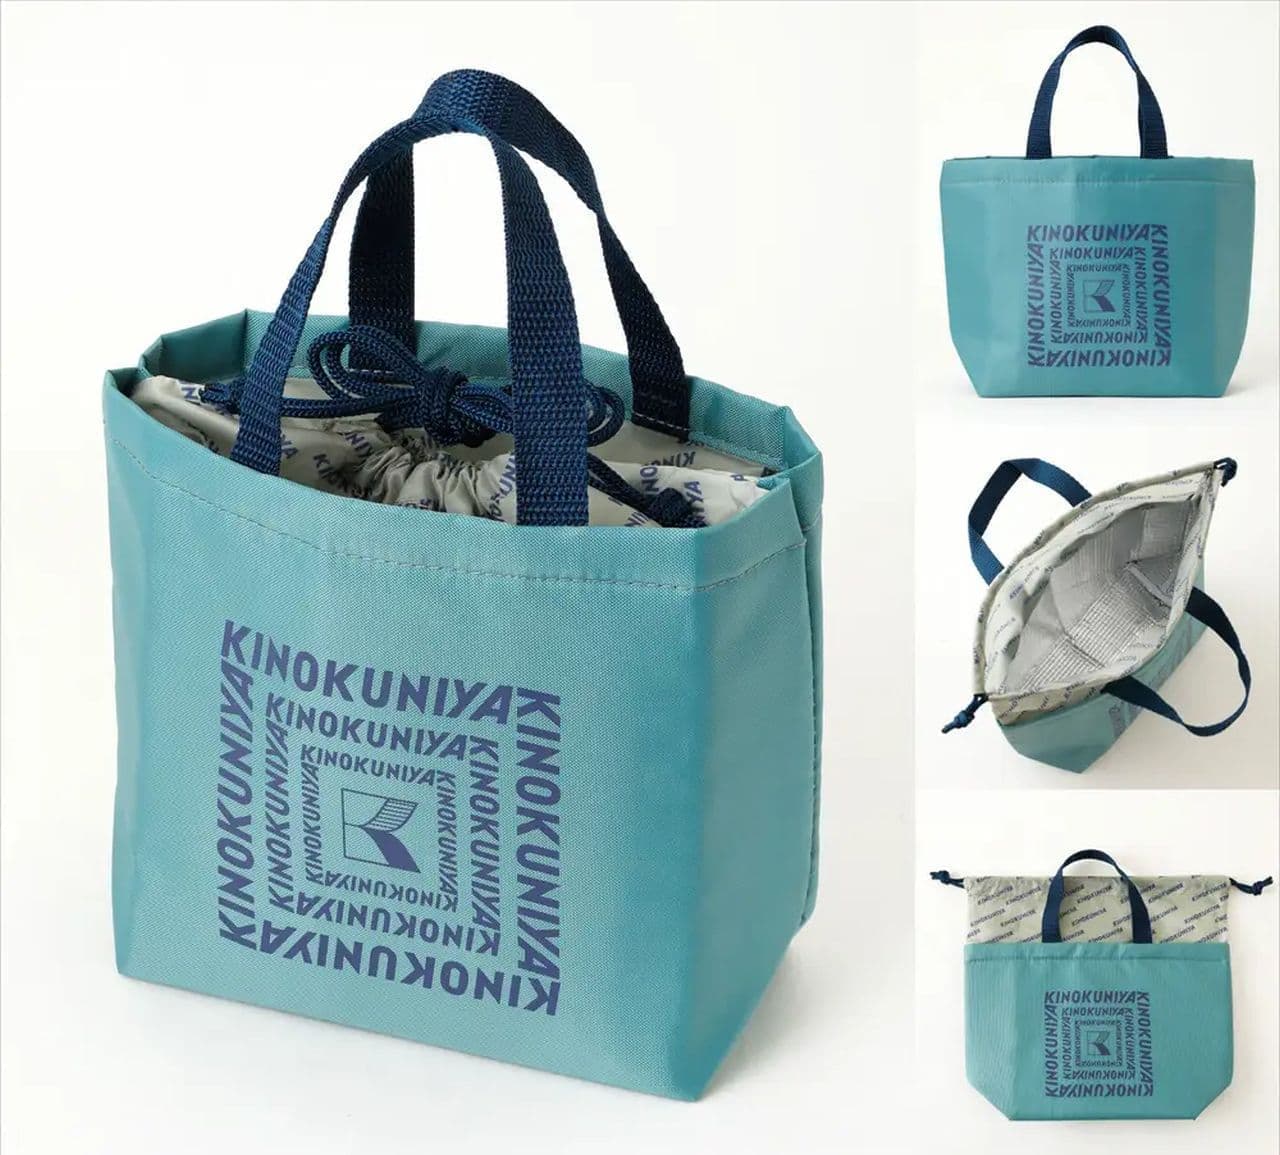 KINOKUNIYA "Jelly Set with Cooling Bag